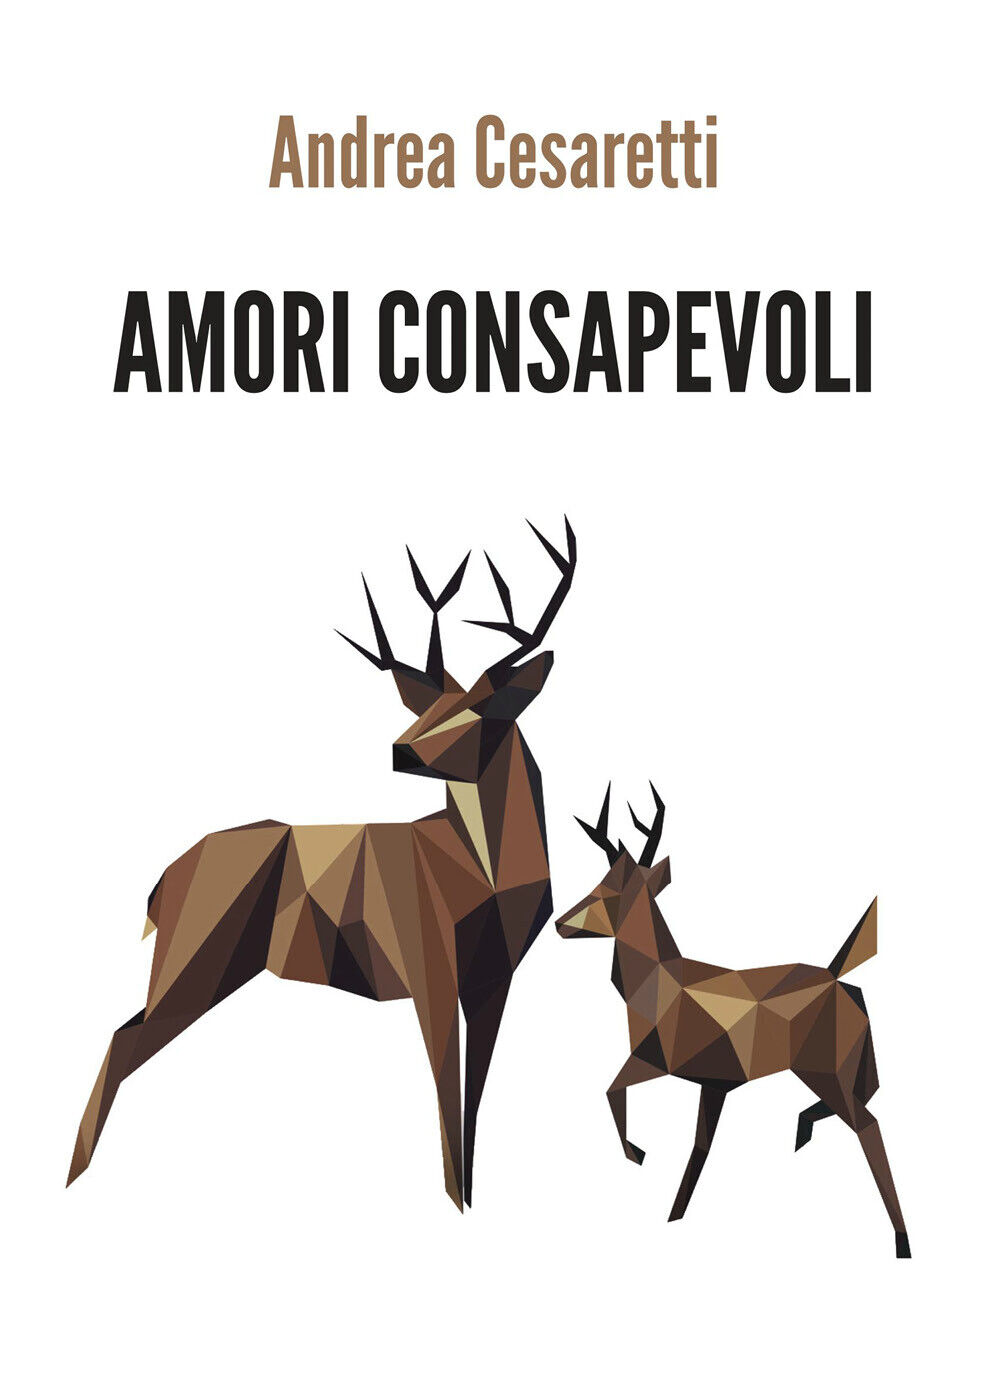 Amori consapevoli, Andrea Cesaretti,  2019,  Youcanprint - ER